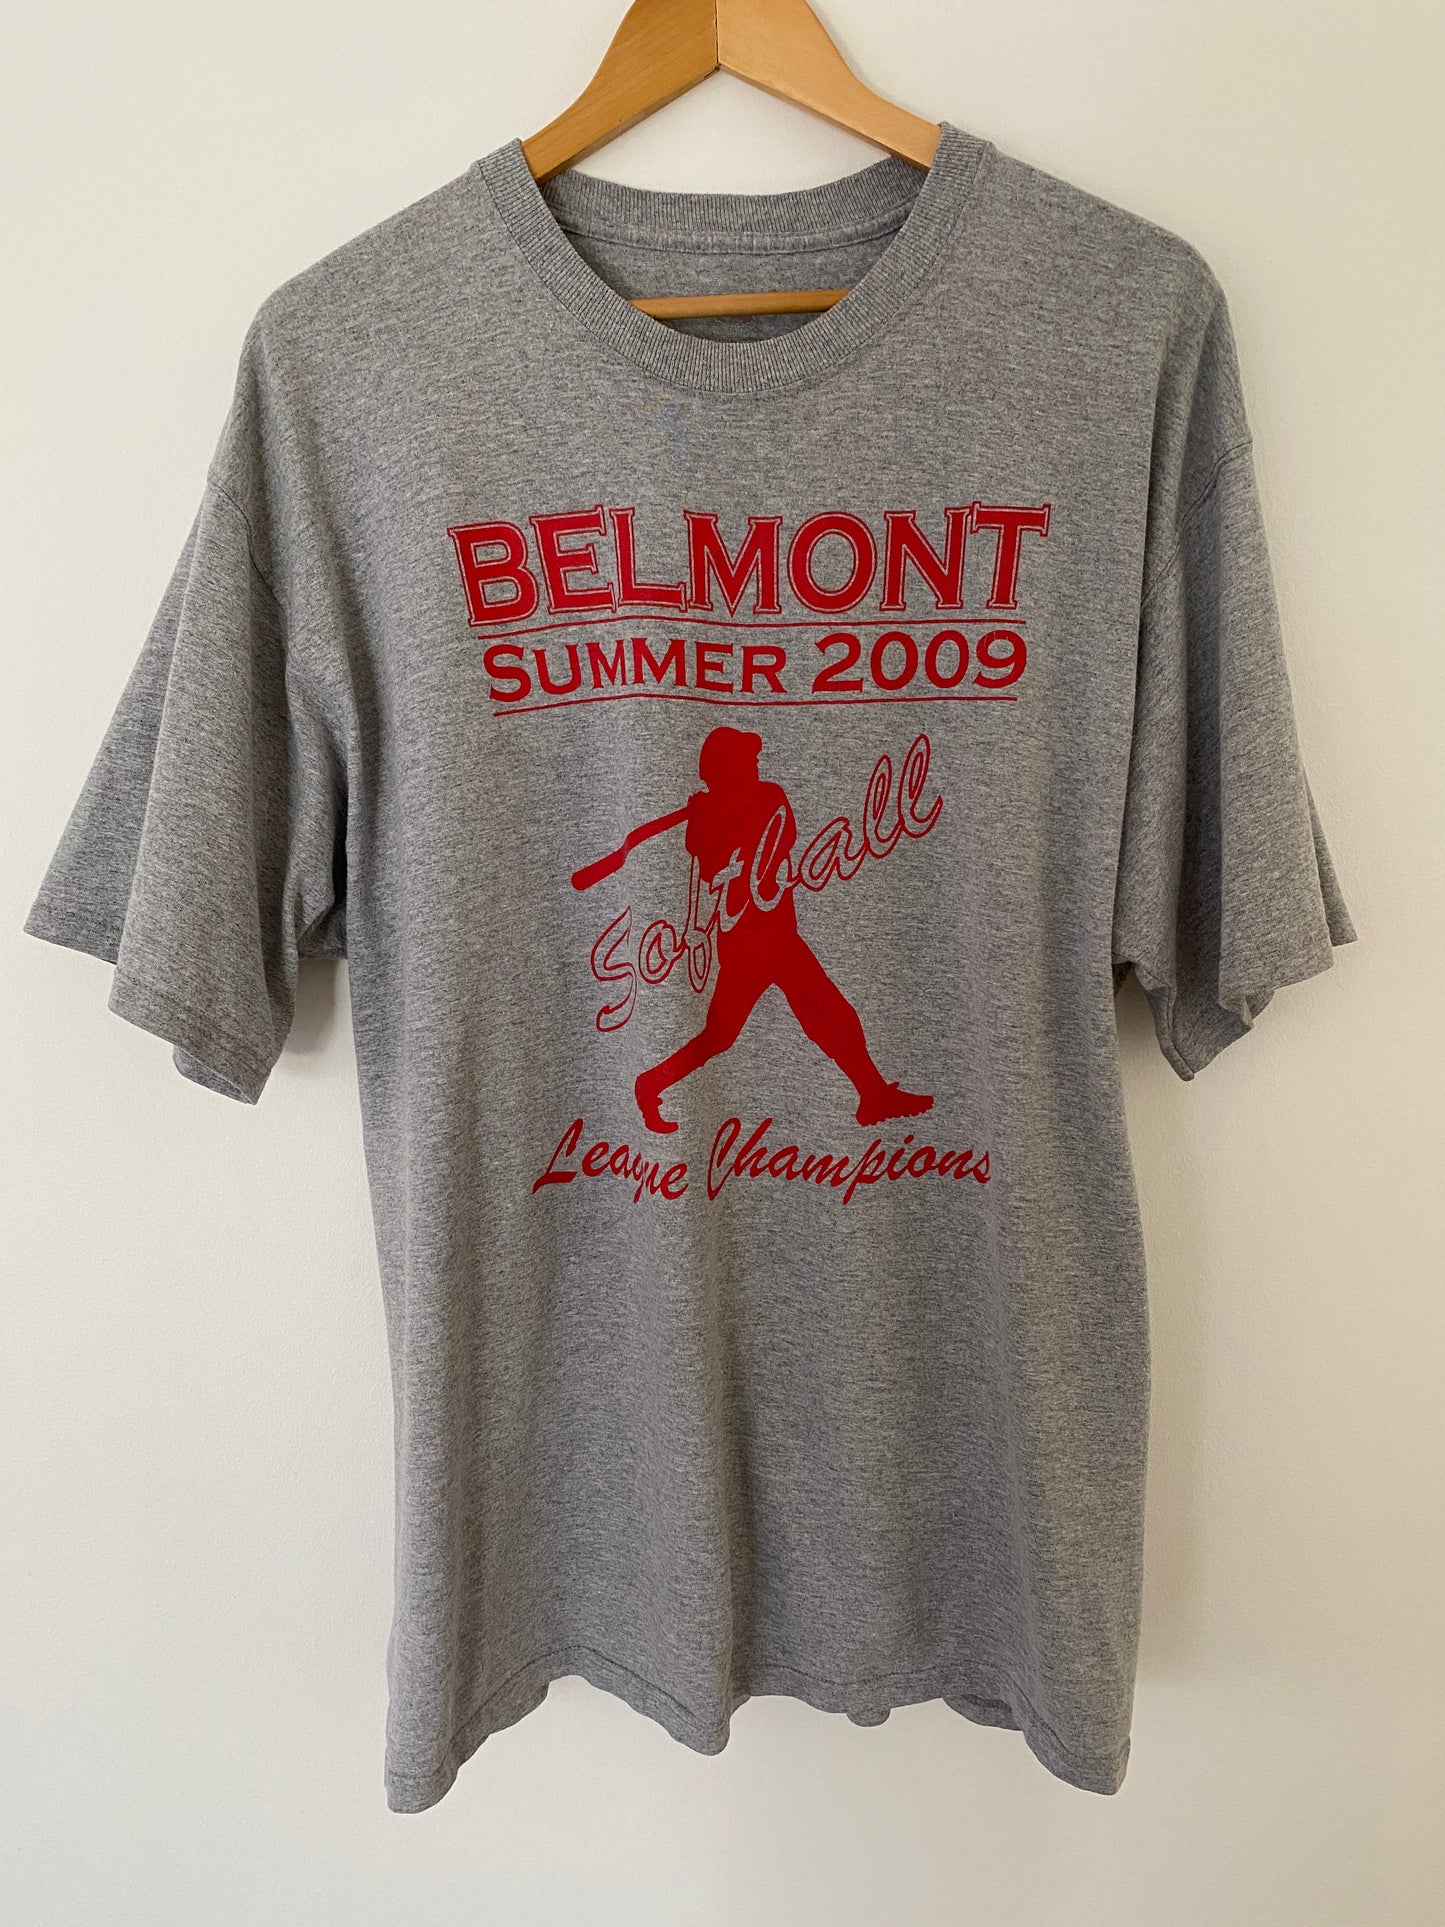 Belmont Summer 2009 Softball Champions T-Shirt - XL